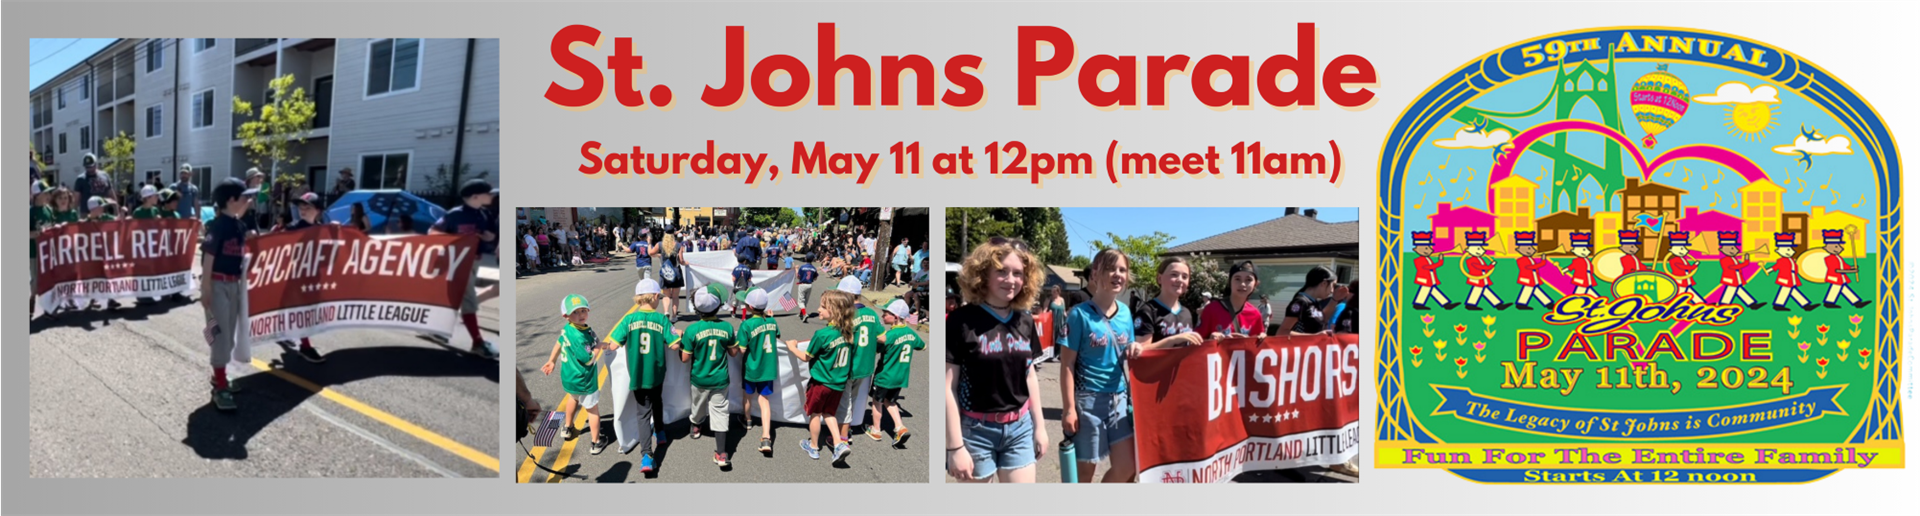 St. Johns Parade - May 11th